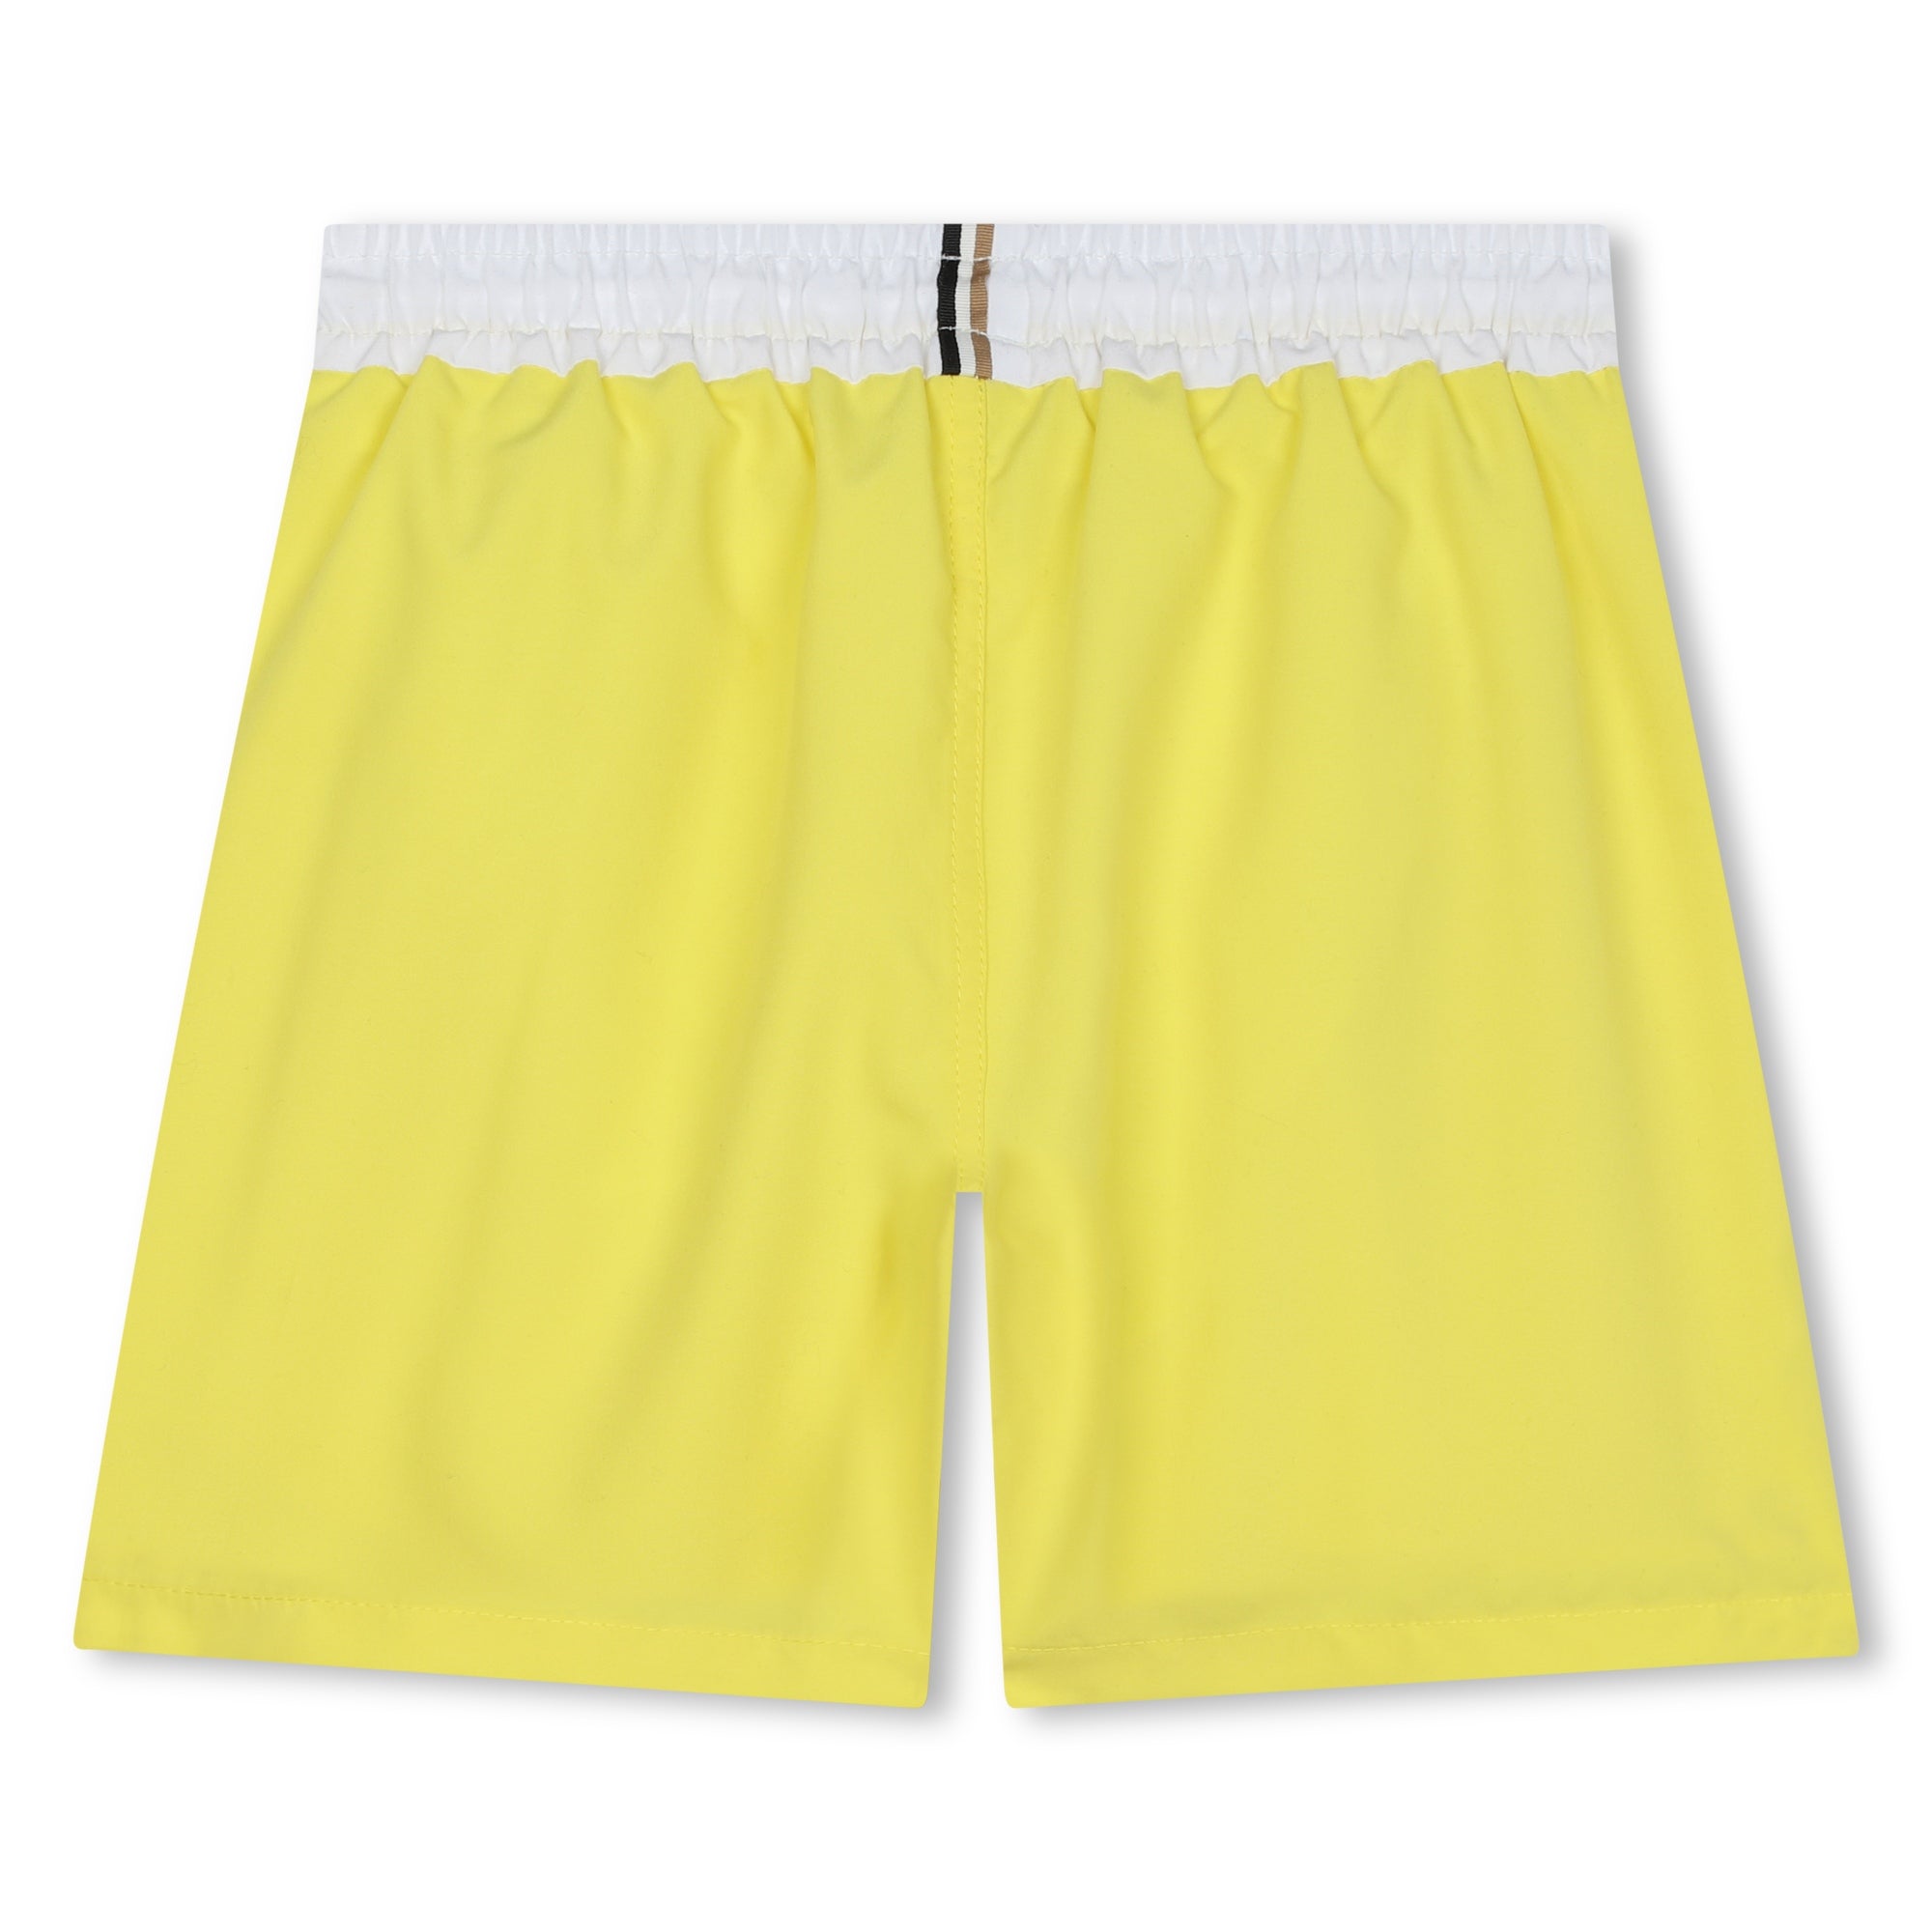 Hugo Boss Yellow Swim Shorts